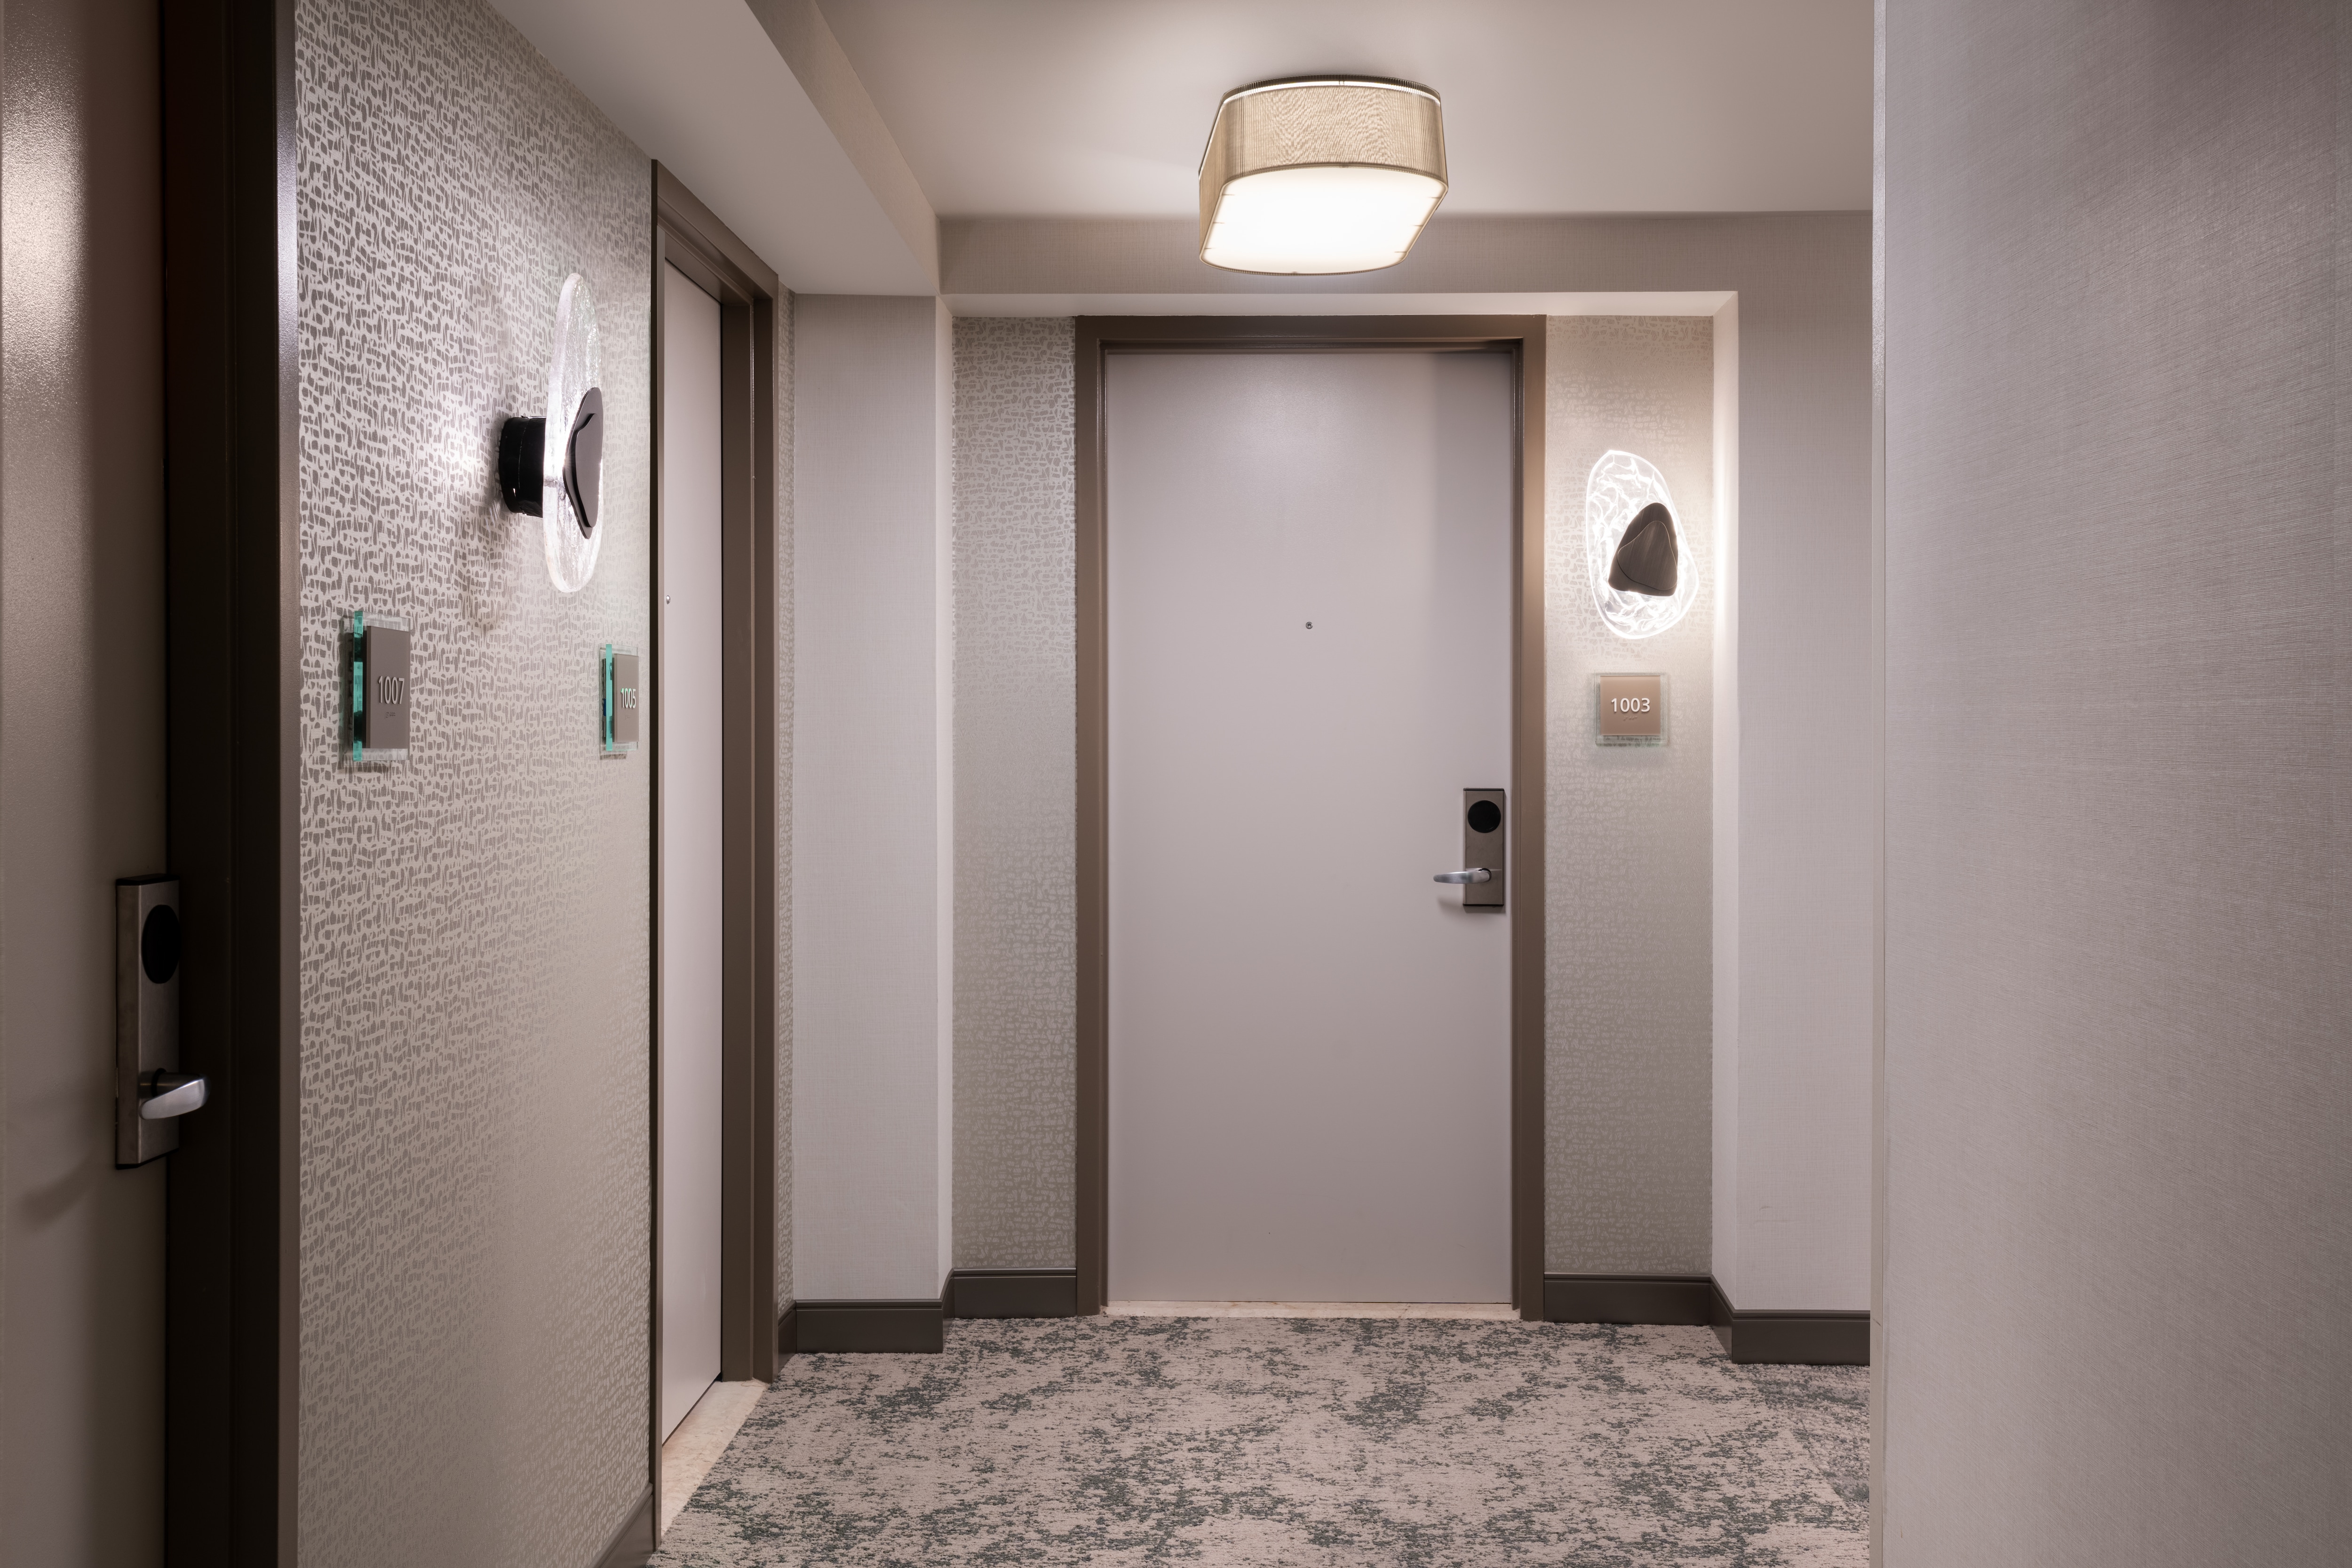 Hallway and guest room doors